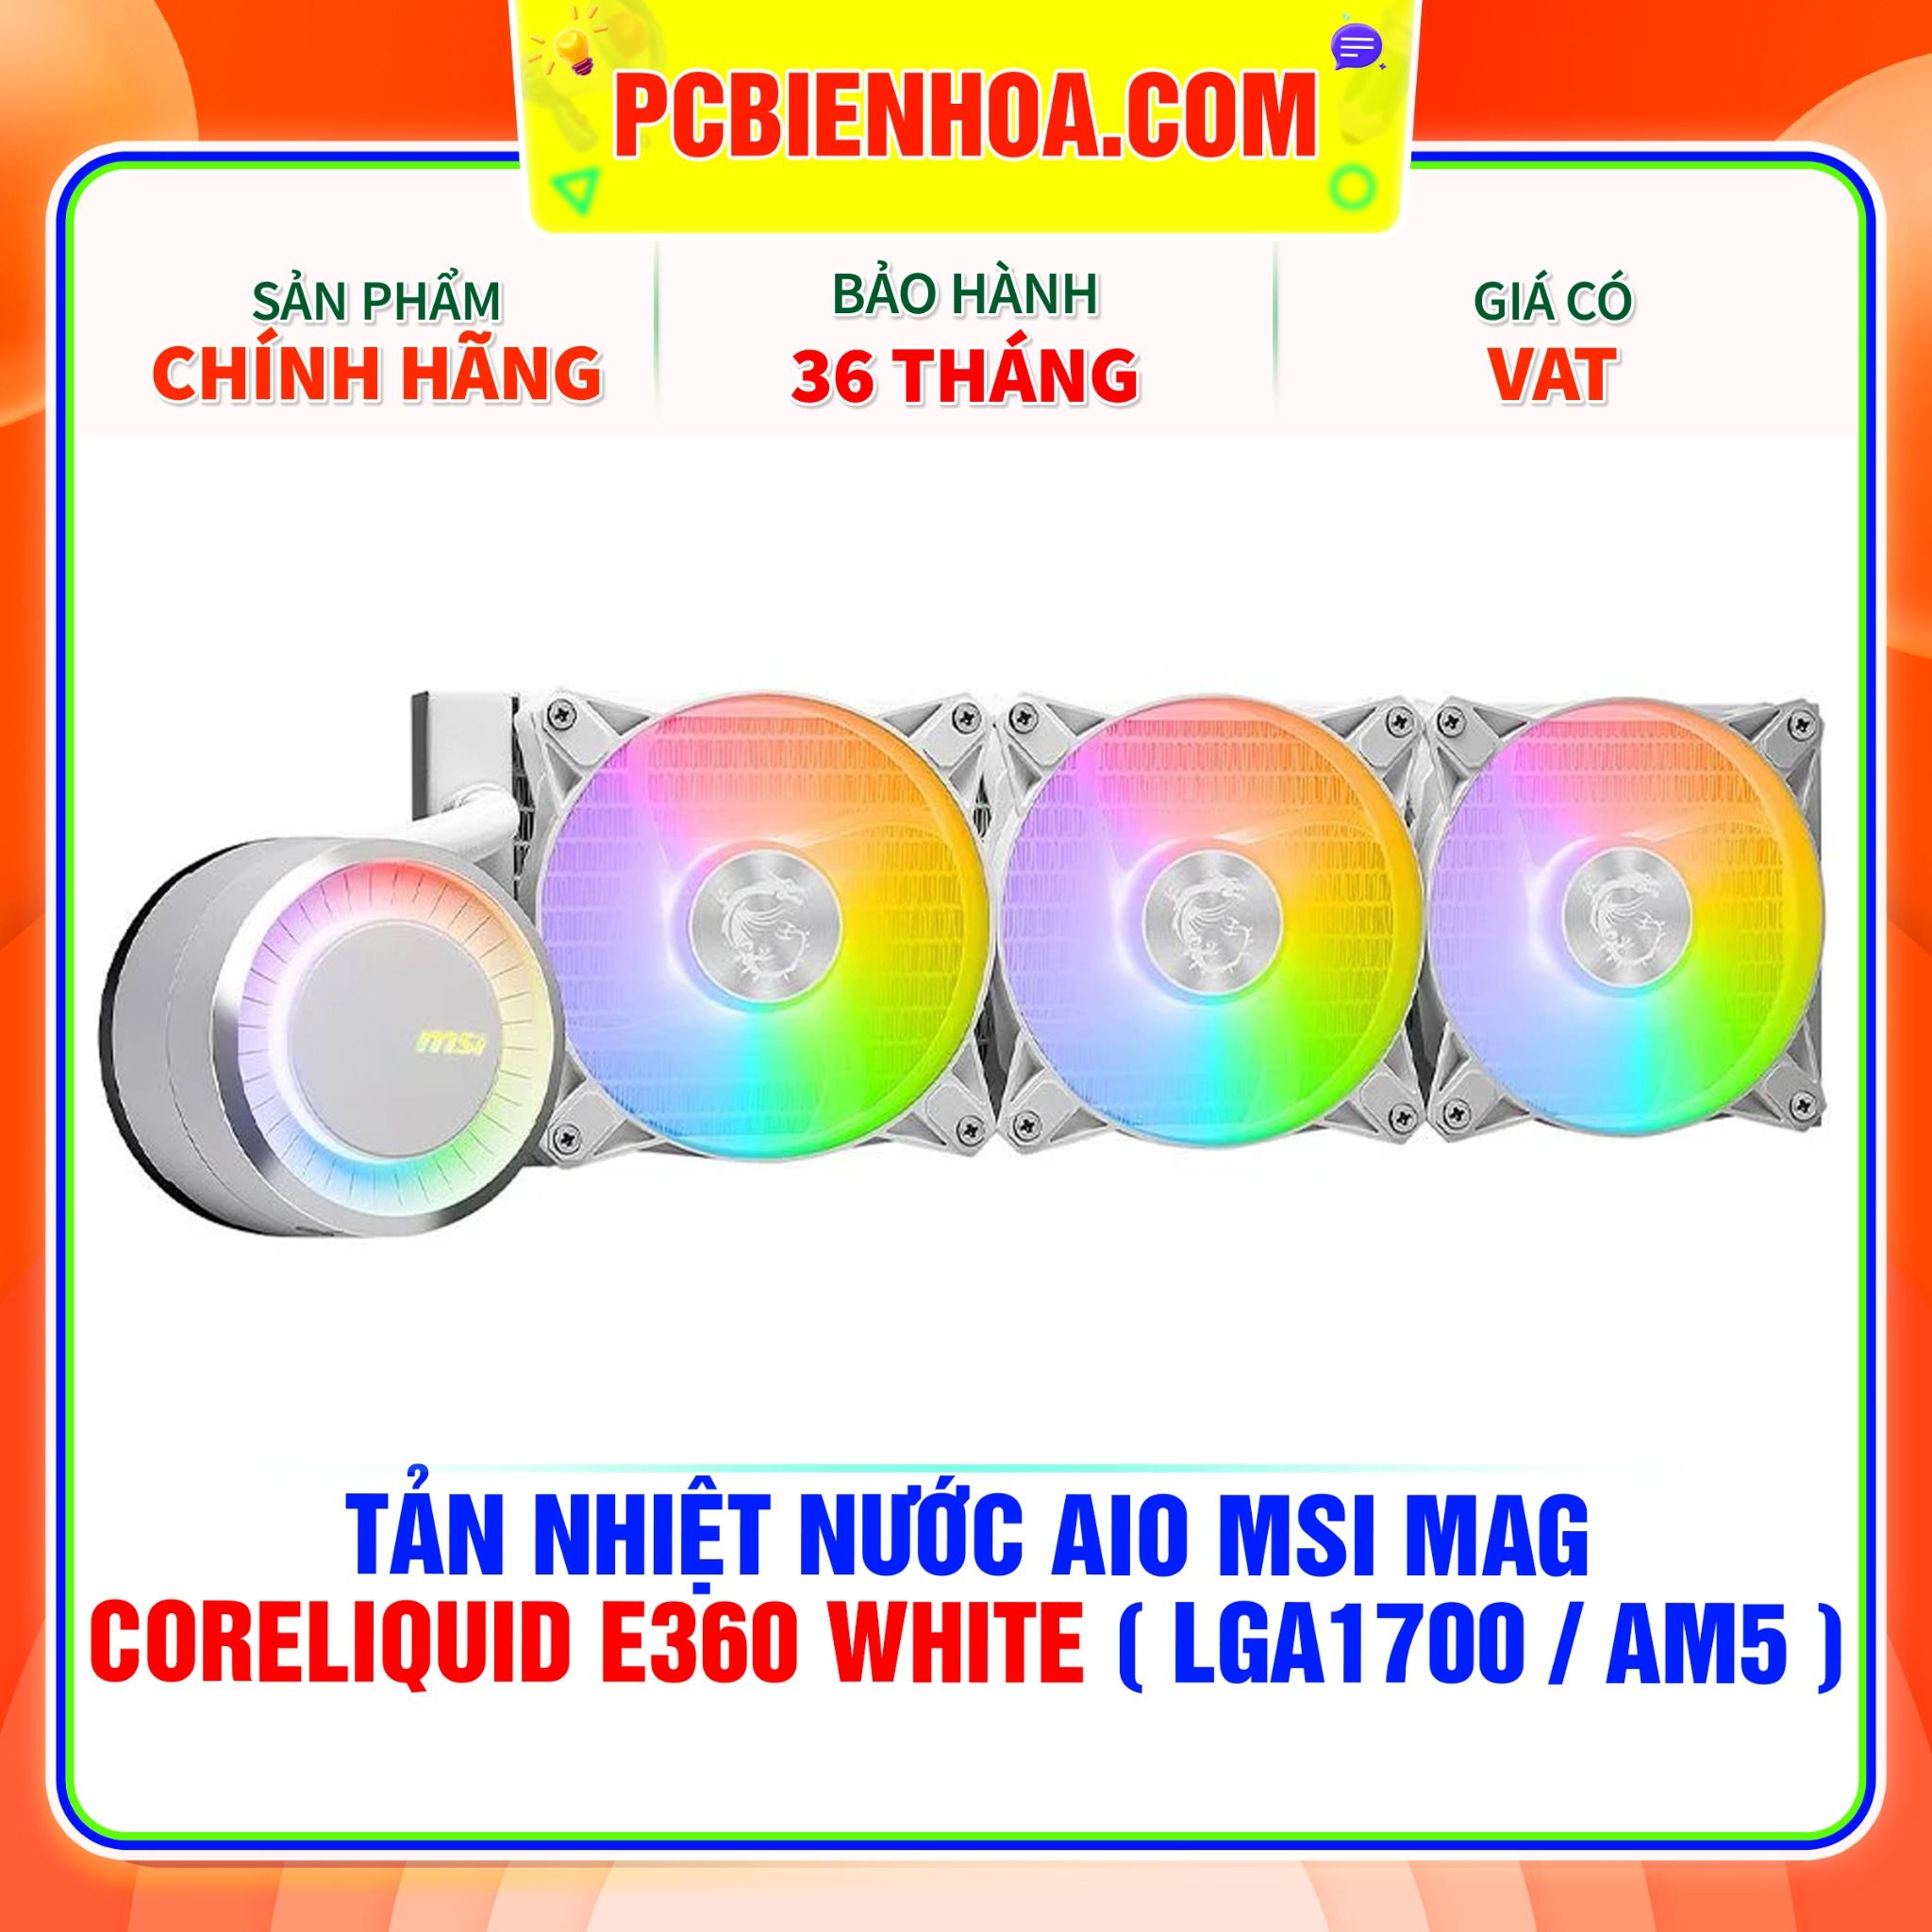  TẢN NHIỆT NƯỚC AIO MSI MAG CORELIQUID E360 WHITE ( HỖ TRỢ SOCKET LGA1700 / AM5 ) 